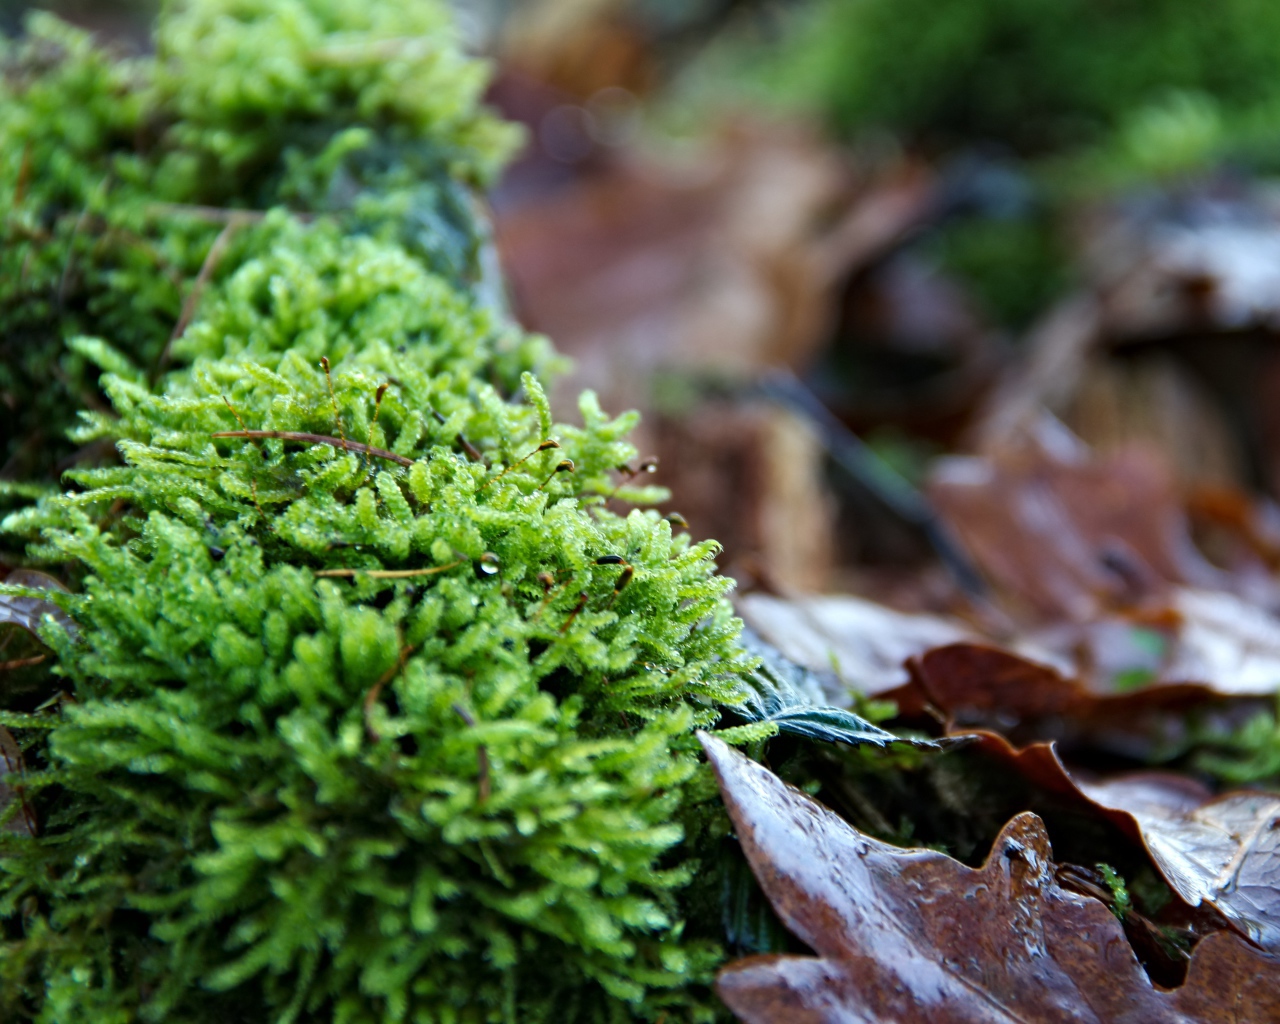 Зеленый мох  на покрытой листьями земле 